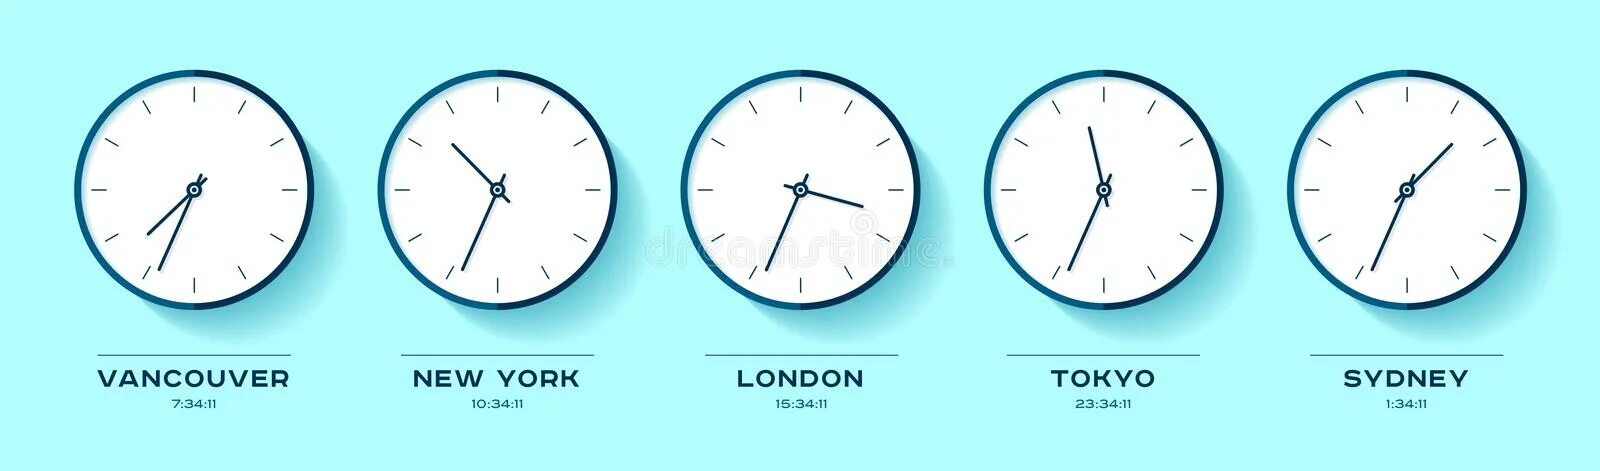 Часы Москва Лондон Нью-Йорк. Мировые часы Сидней Токио Лондон Нью Йорк. Мировые часы Москва Нью-Йорк Токио Лондон Сидней. Сколько времени в Лондоне.